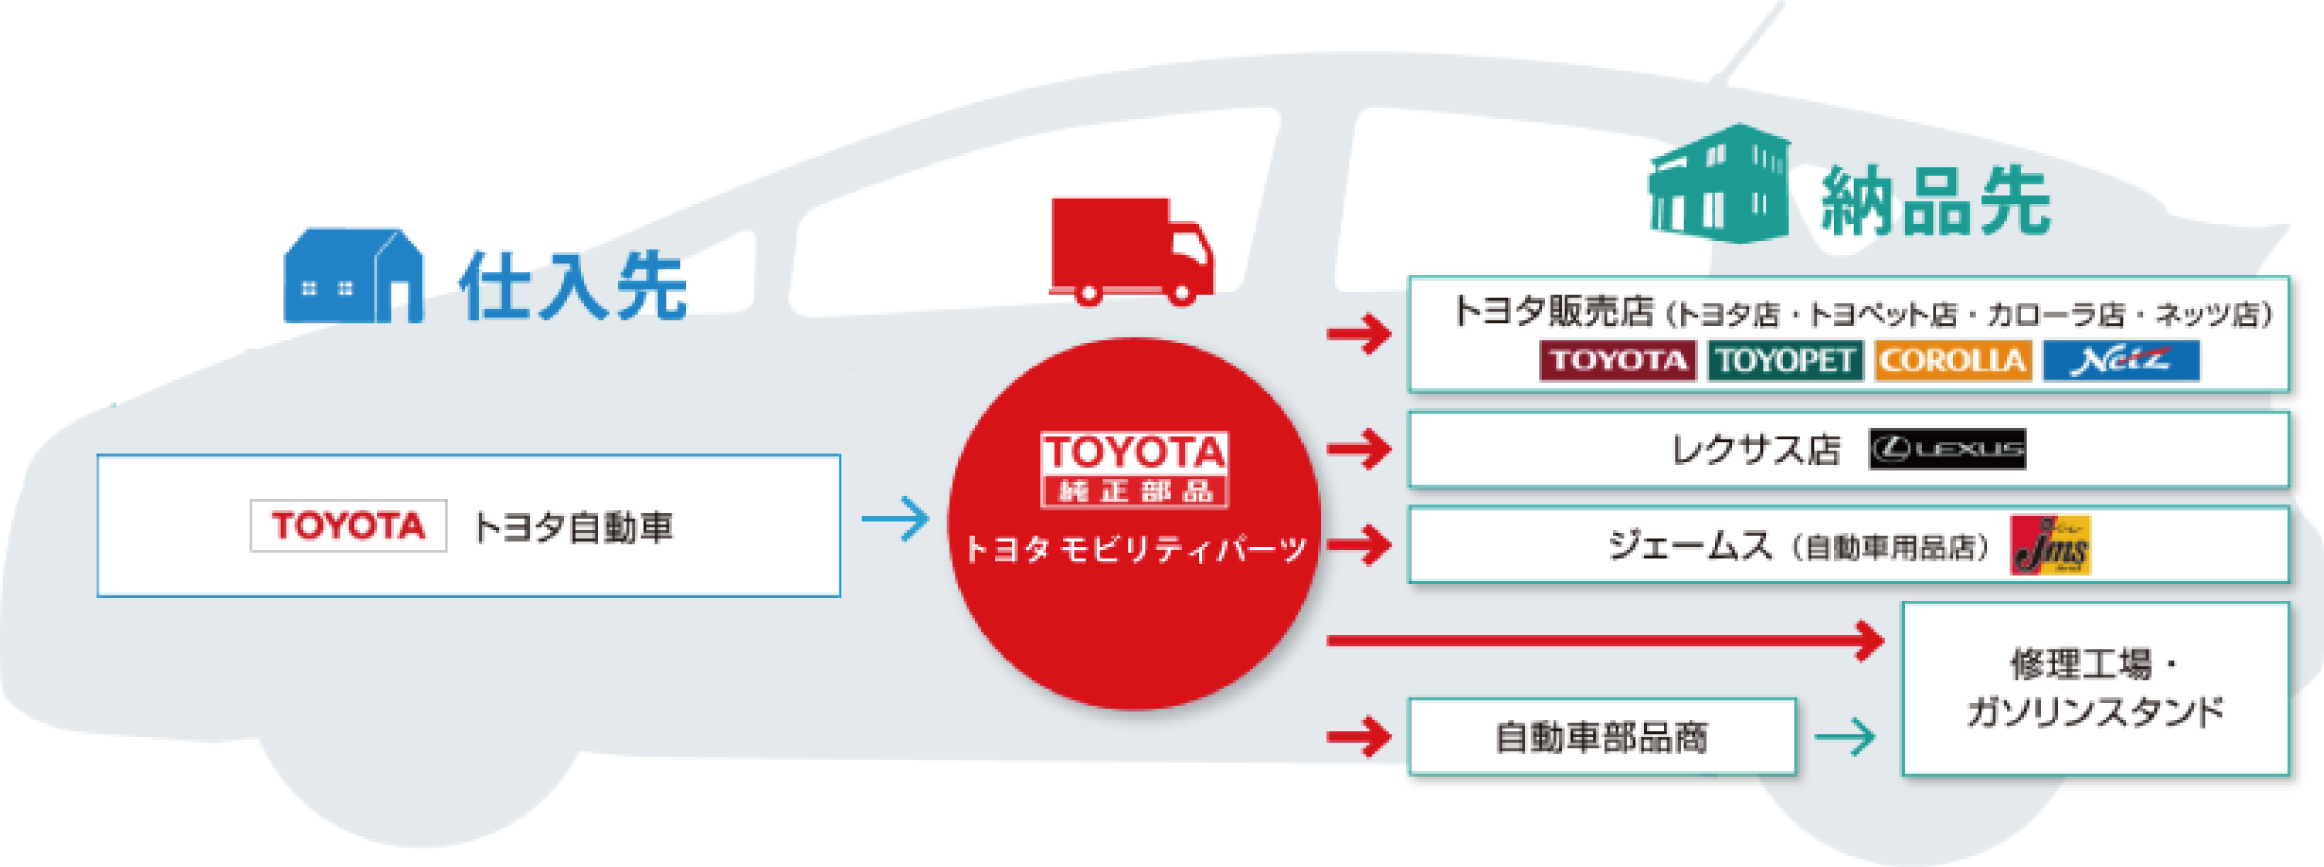 「確かな仕事」でトヨタ車ユーザー様のカーライフを支えています。